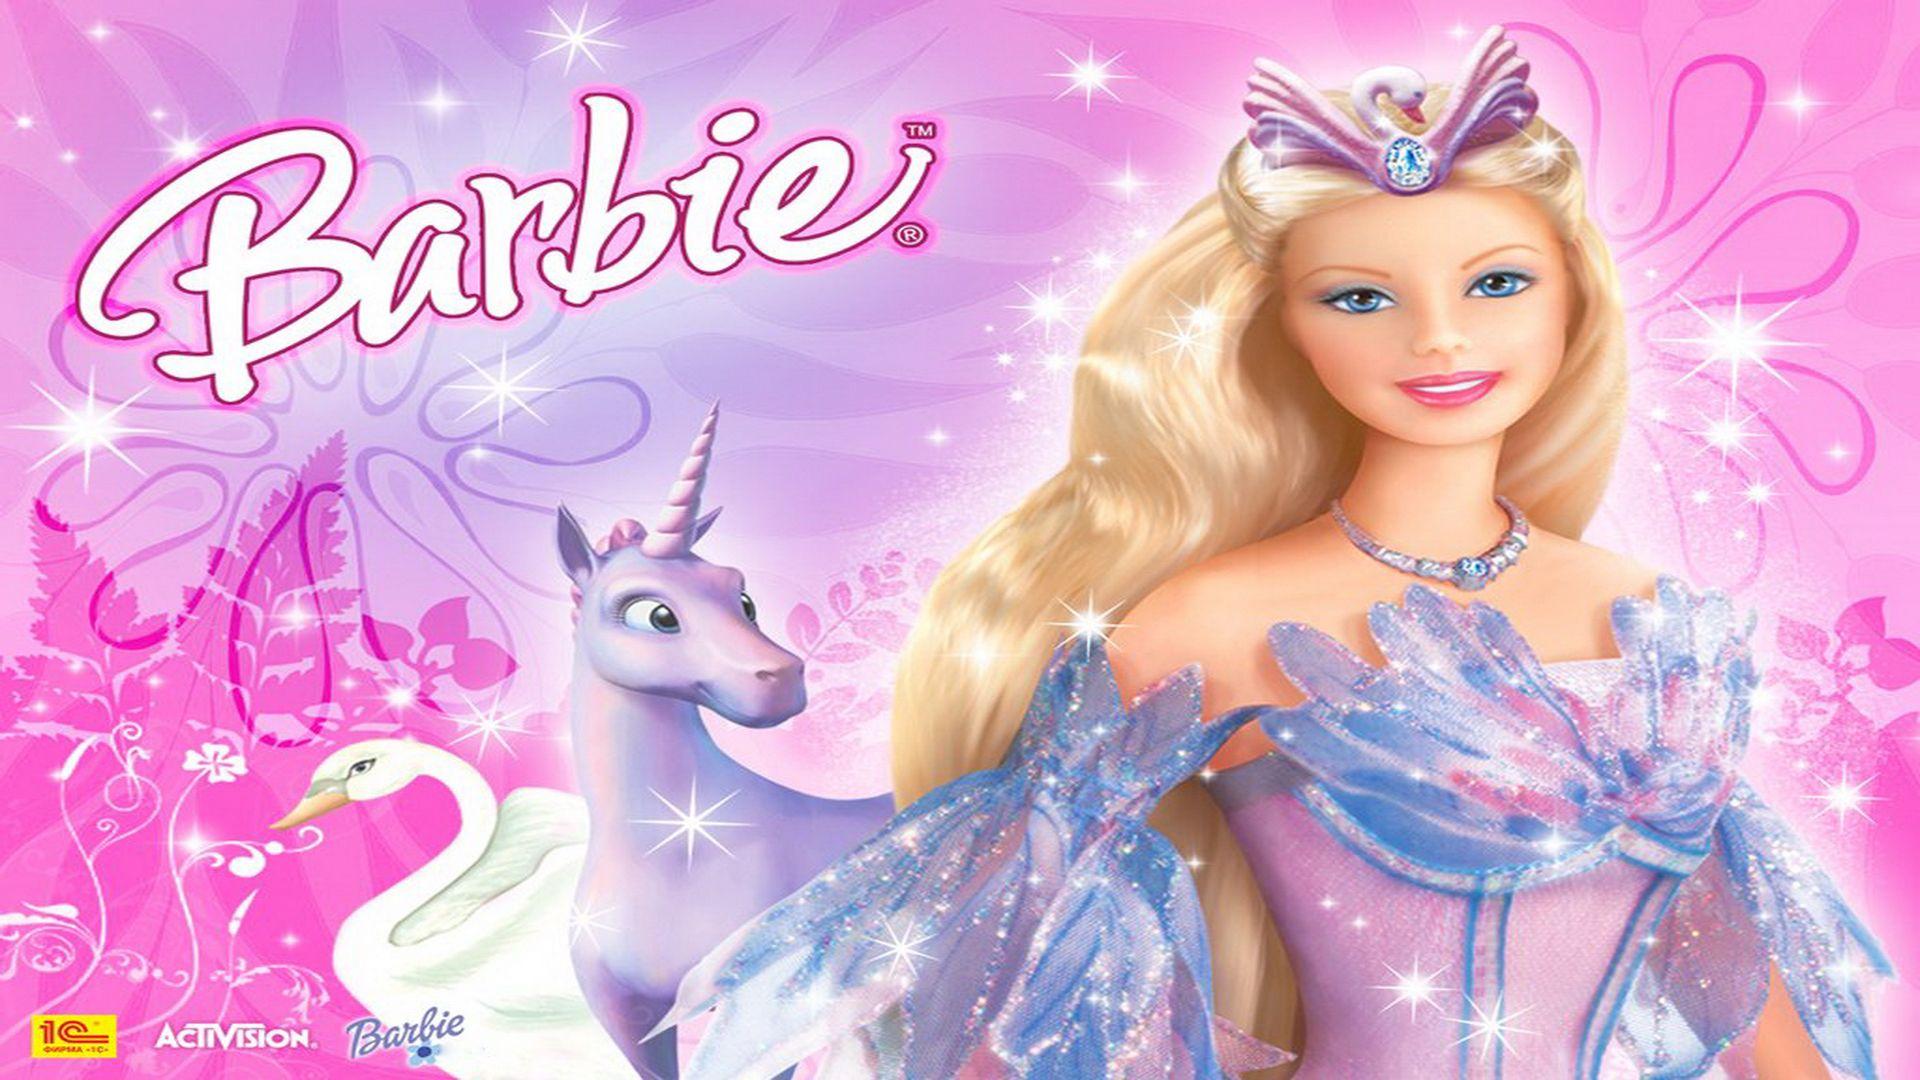 Barbie Wallpaper HD